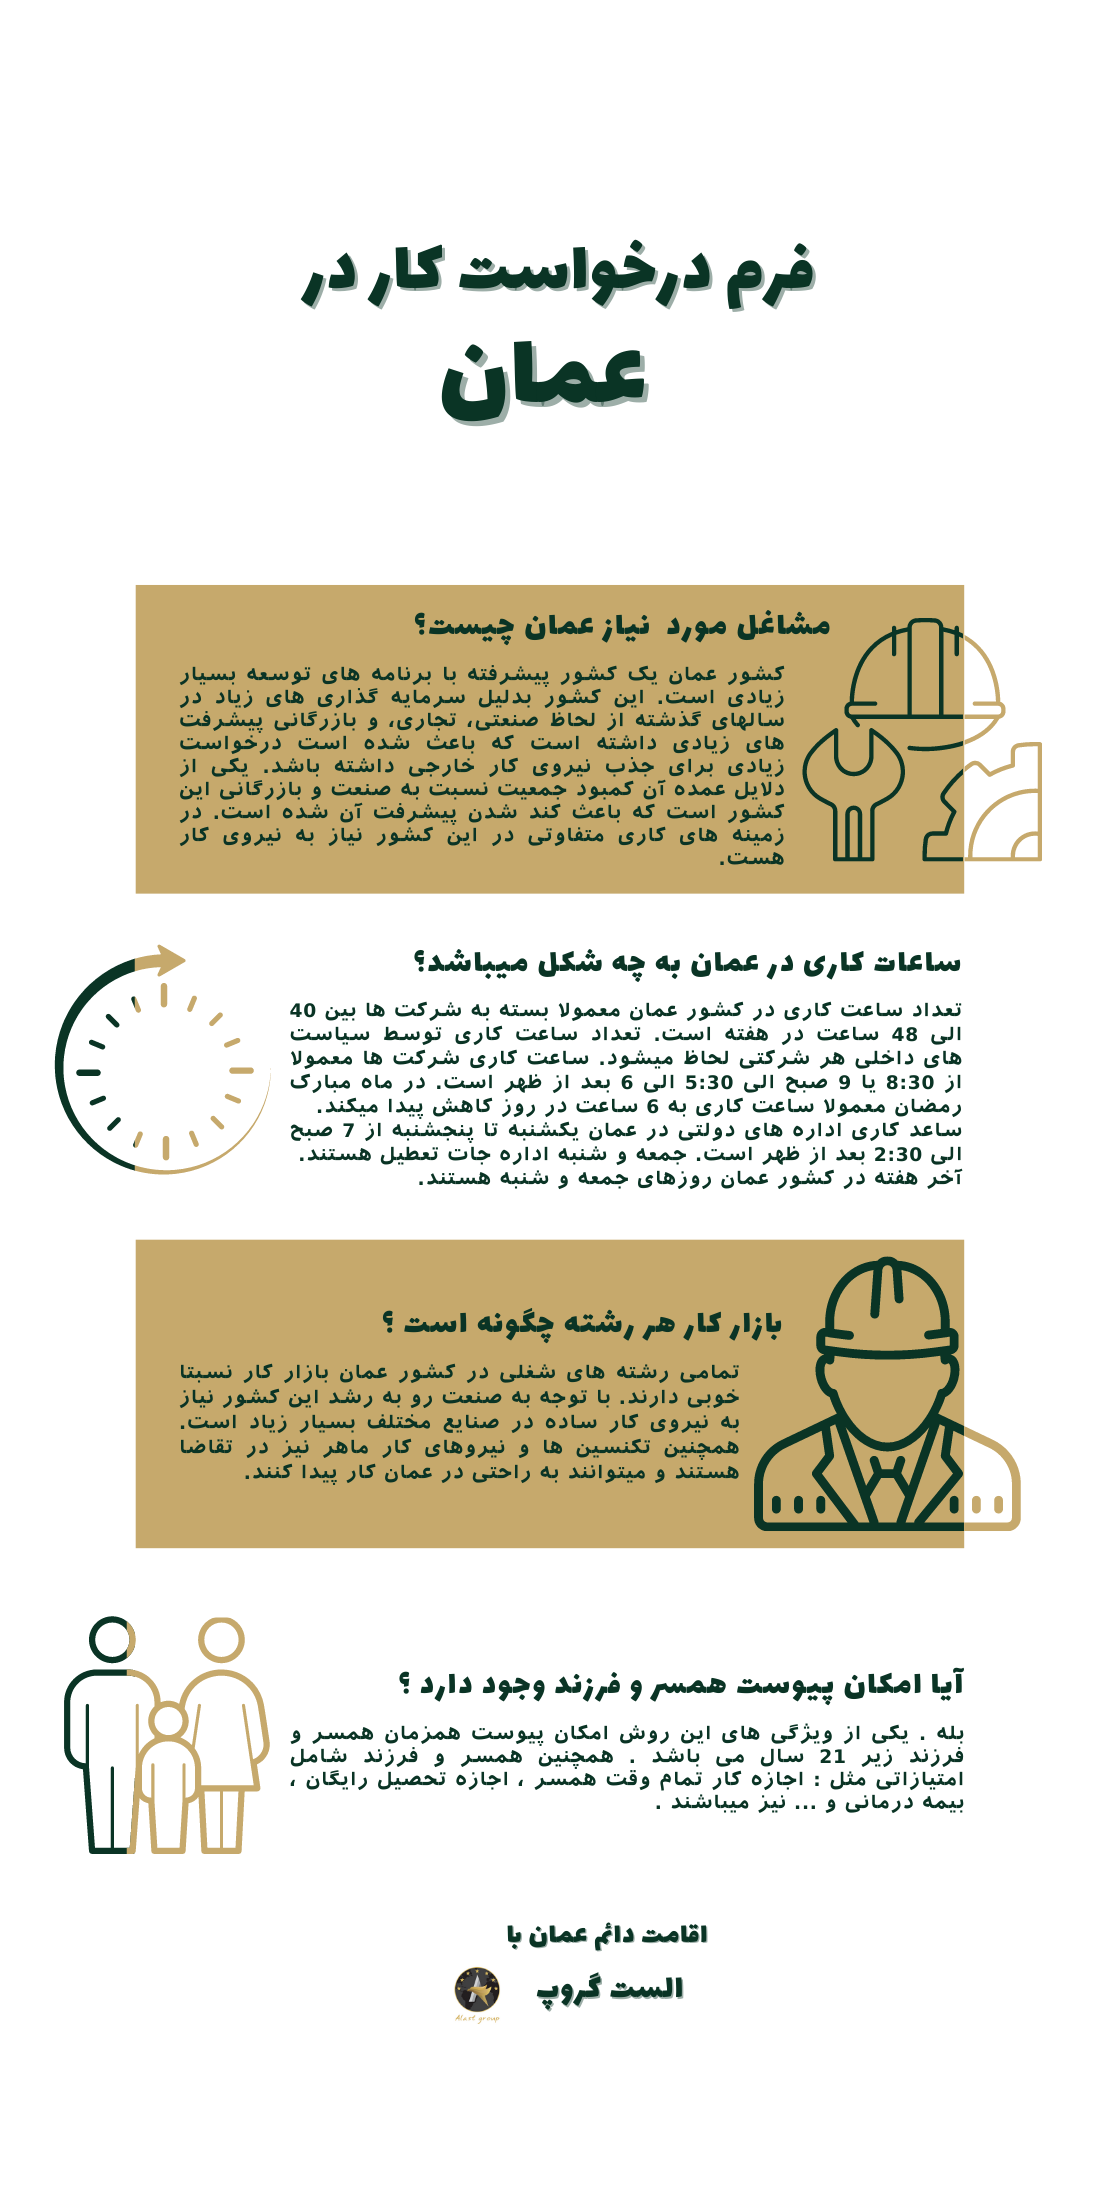 اینفوگرافیک فرم درخواست کار در عمان